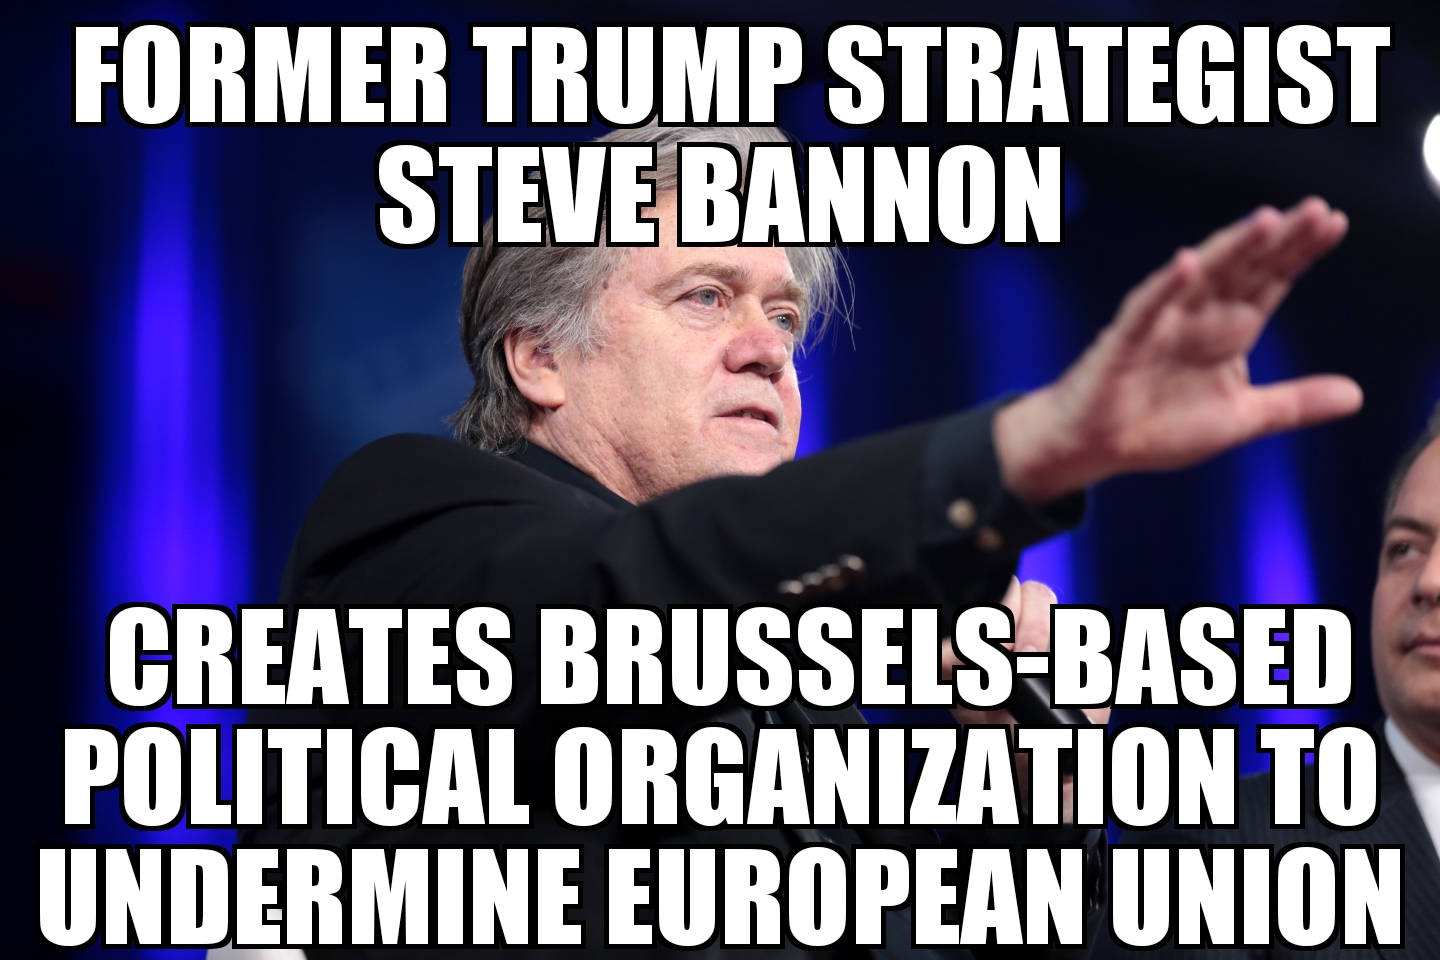 Bannon creates political organization to undermine E.U.